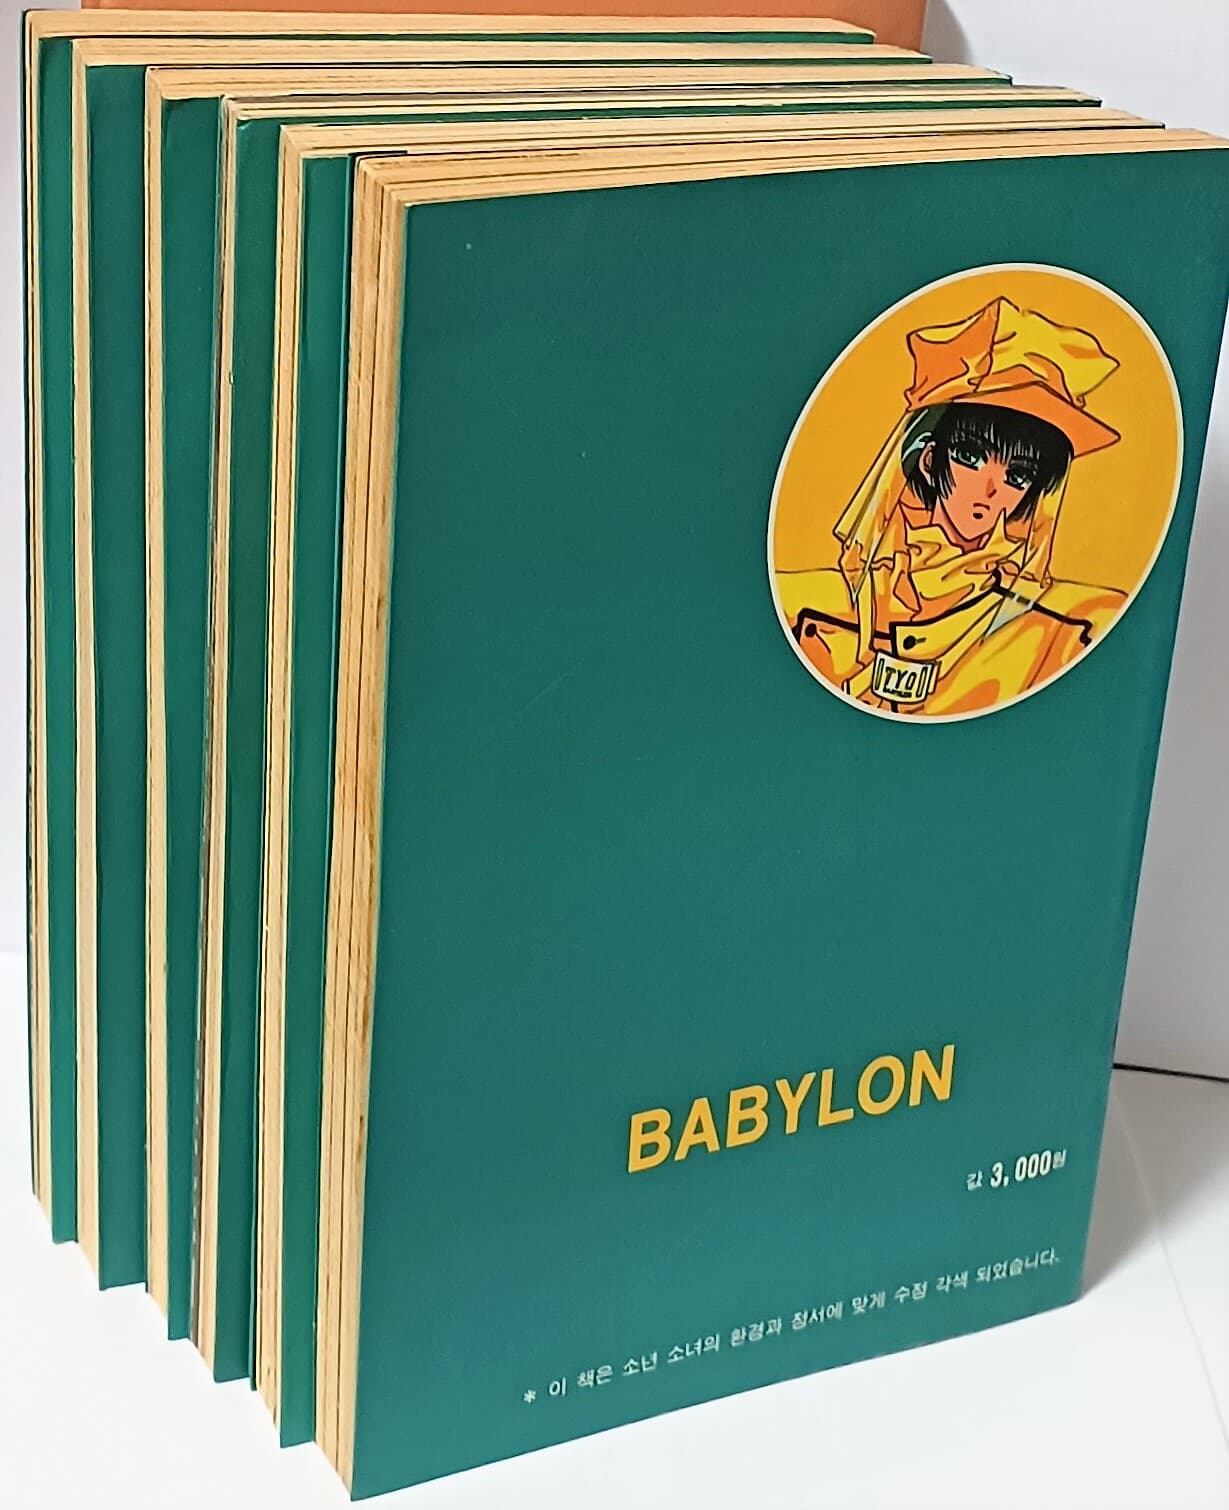 바빌론(BABYLON) -추억의 클램프(CLAMP)의 동경바빌론 만화-(1권)~(6권)세트-1993년 초판-절판된 귀한 만화-